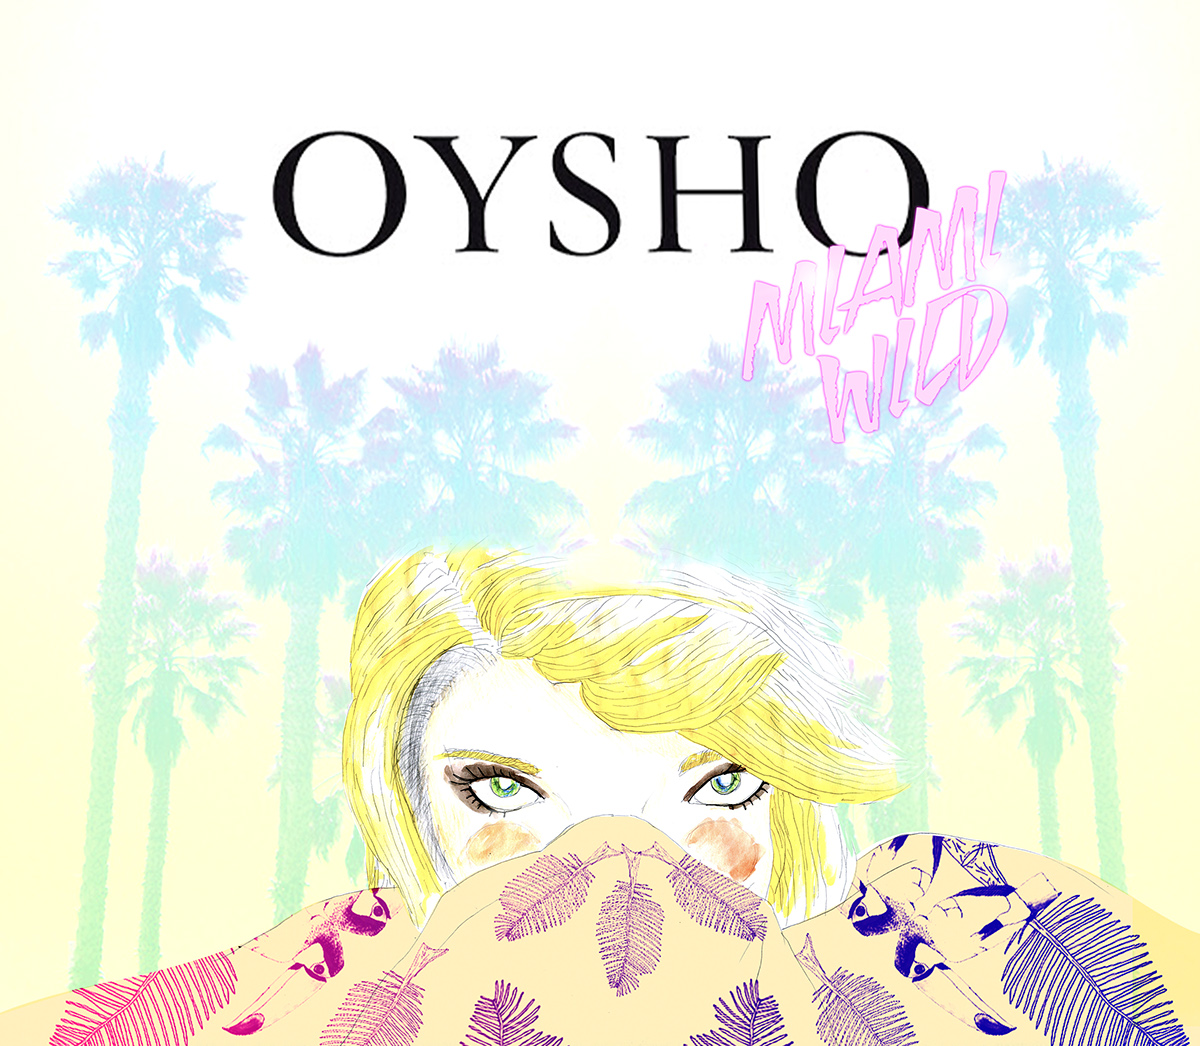 Oysho marca proyecto posters